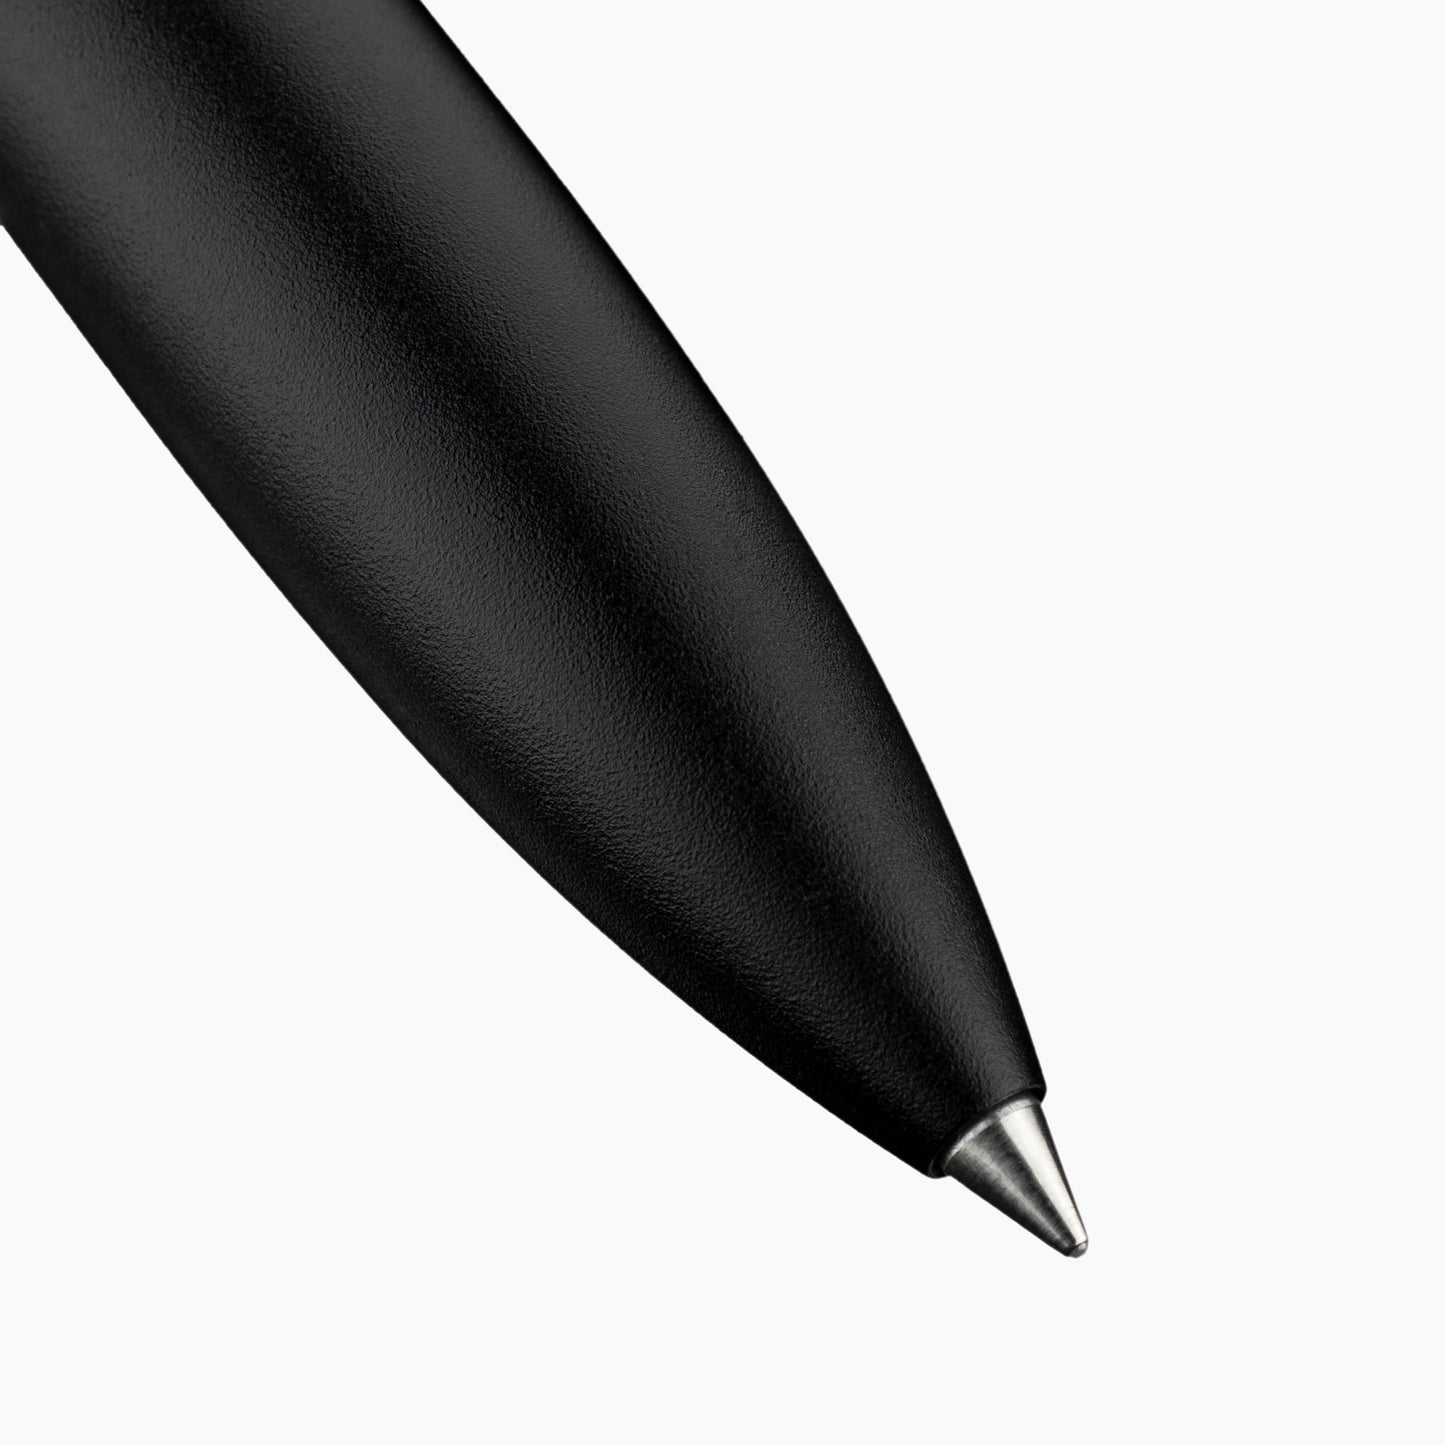 nib black aluminium rollerball pen